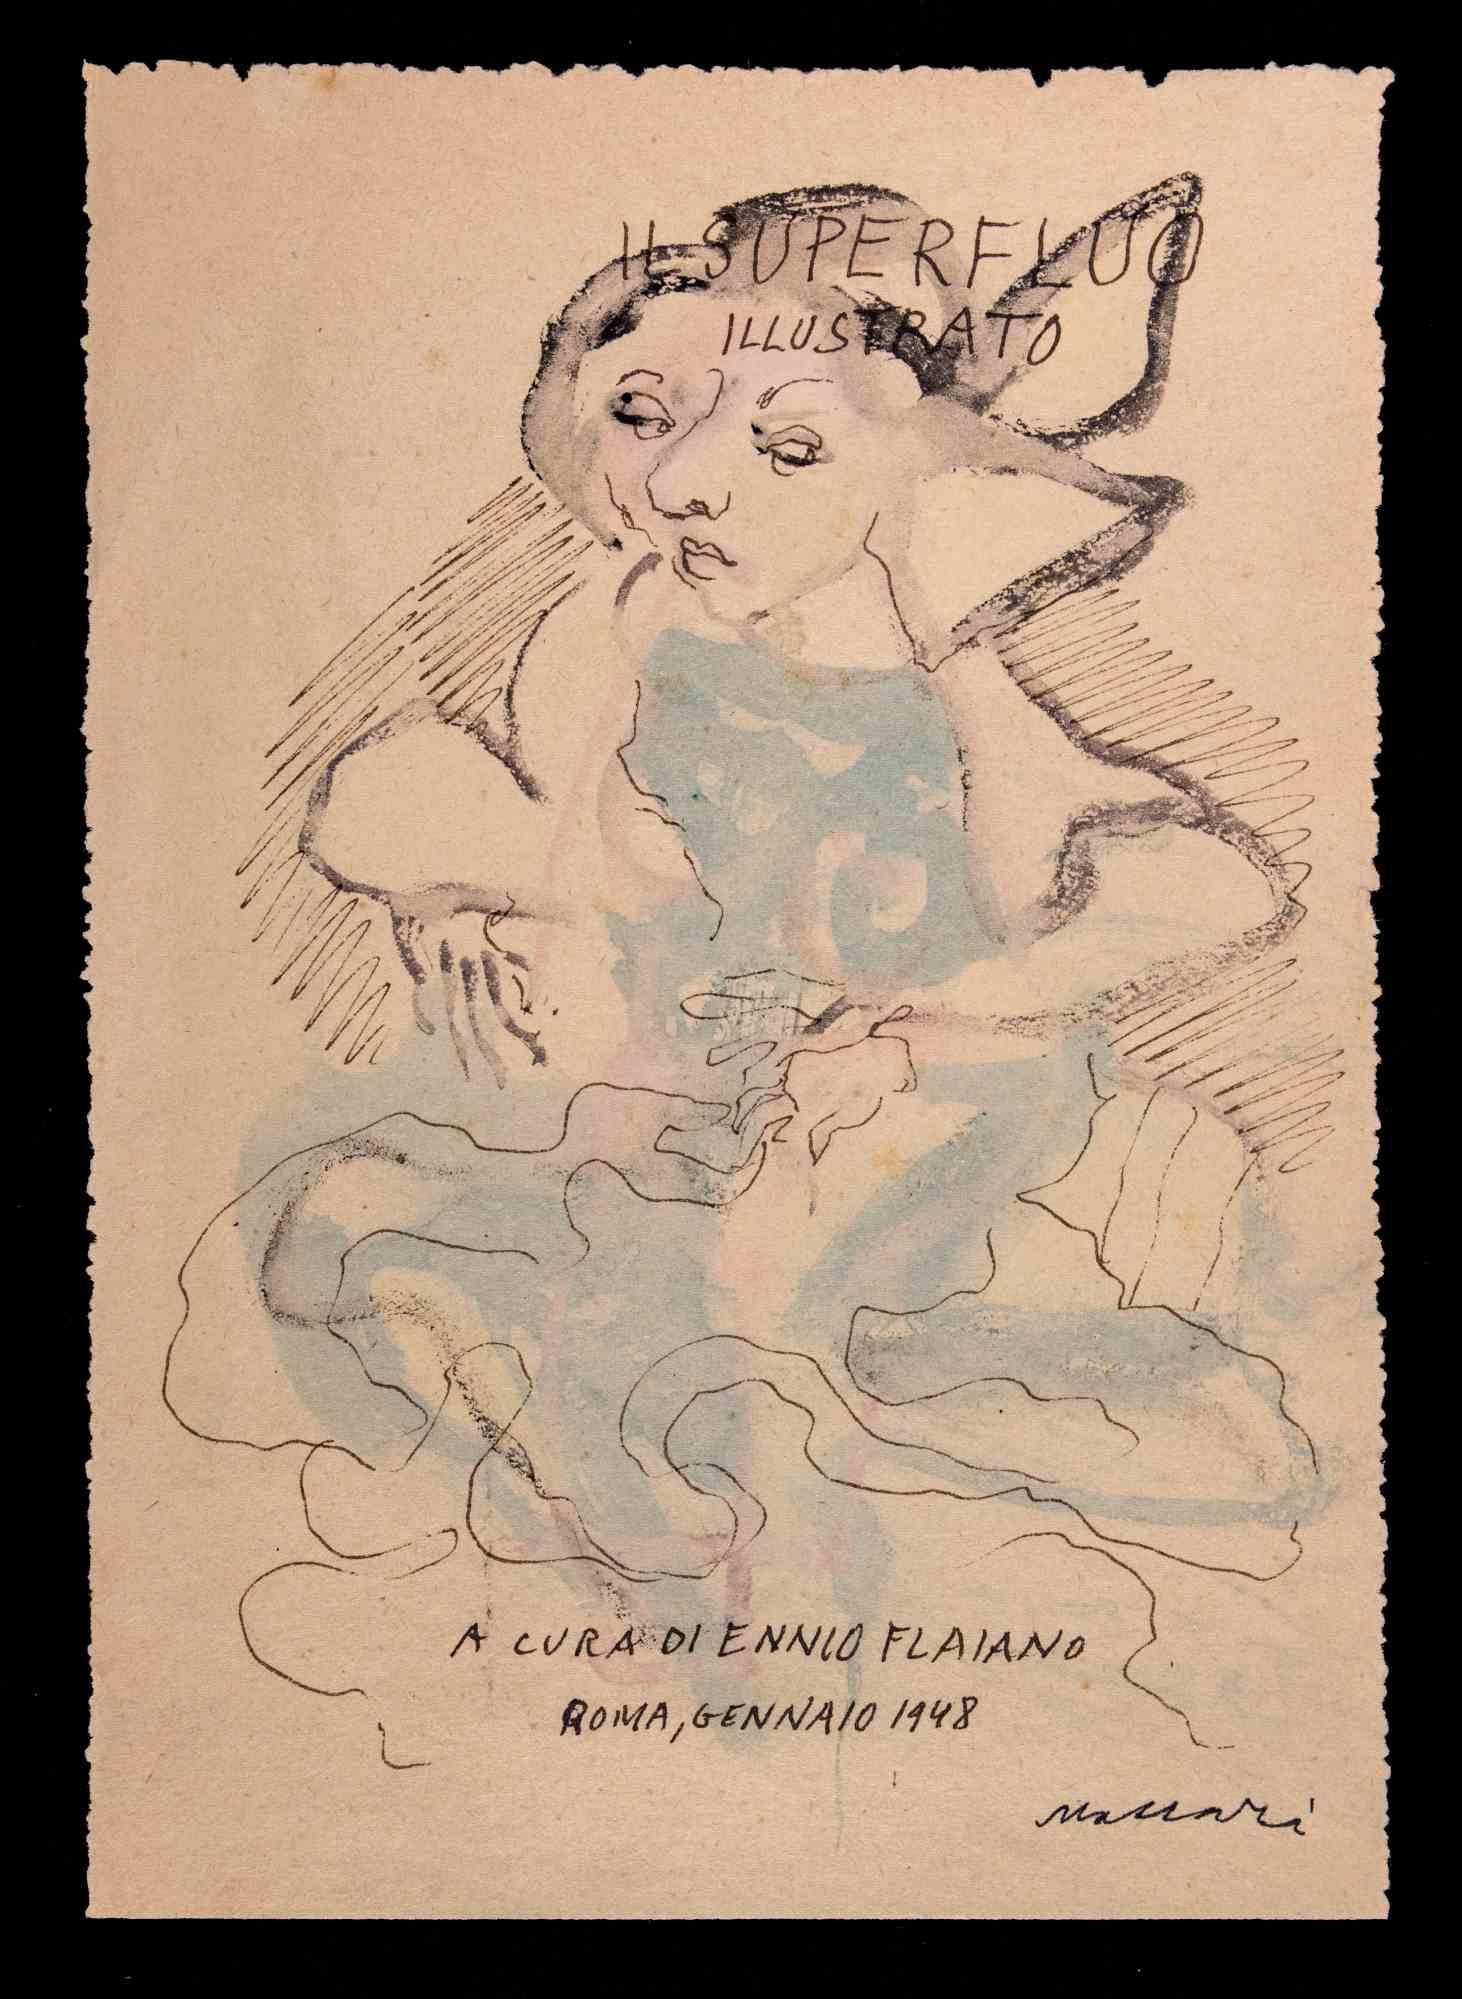  Mino Maccari Figurative Art - Superfluous - Cover for "Il Superfluo Illustrato"- Drawing by M. Maccari - 1948